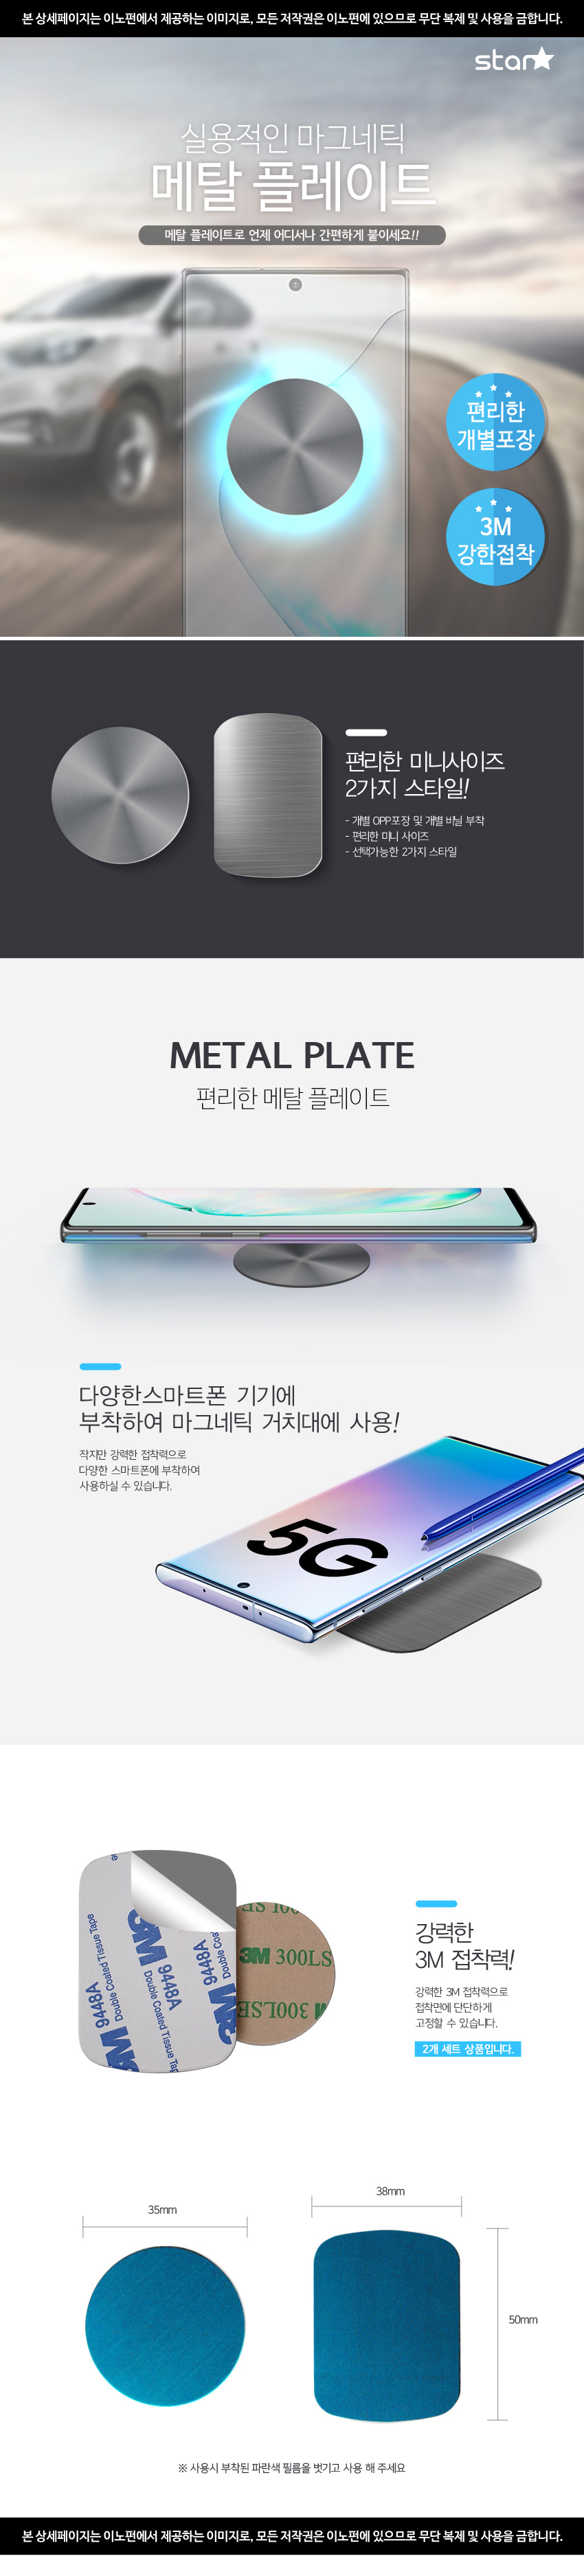 metal_plate.jpg